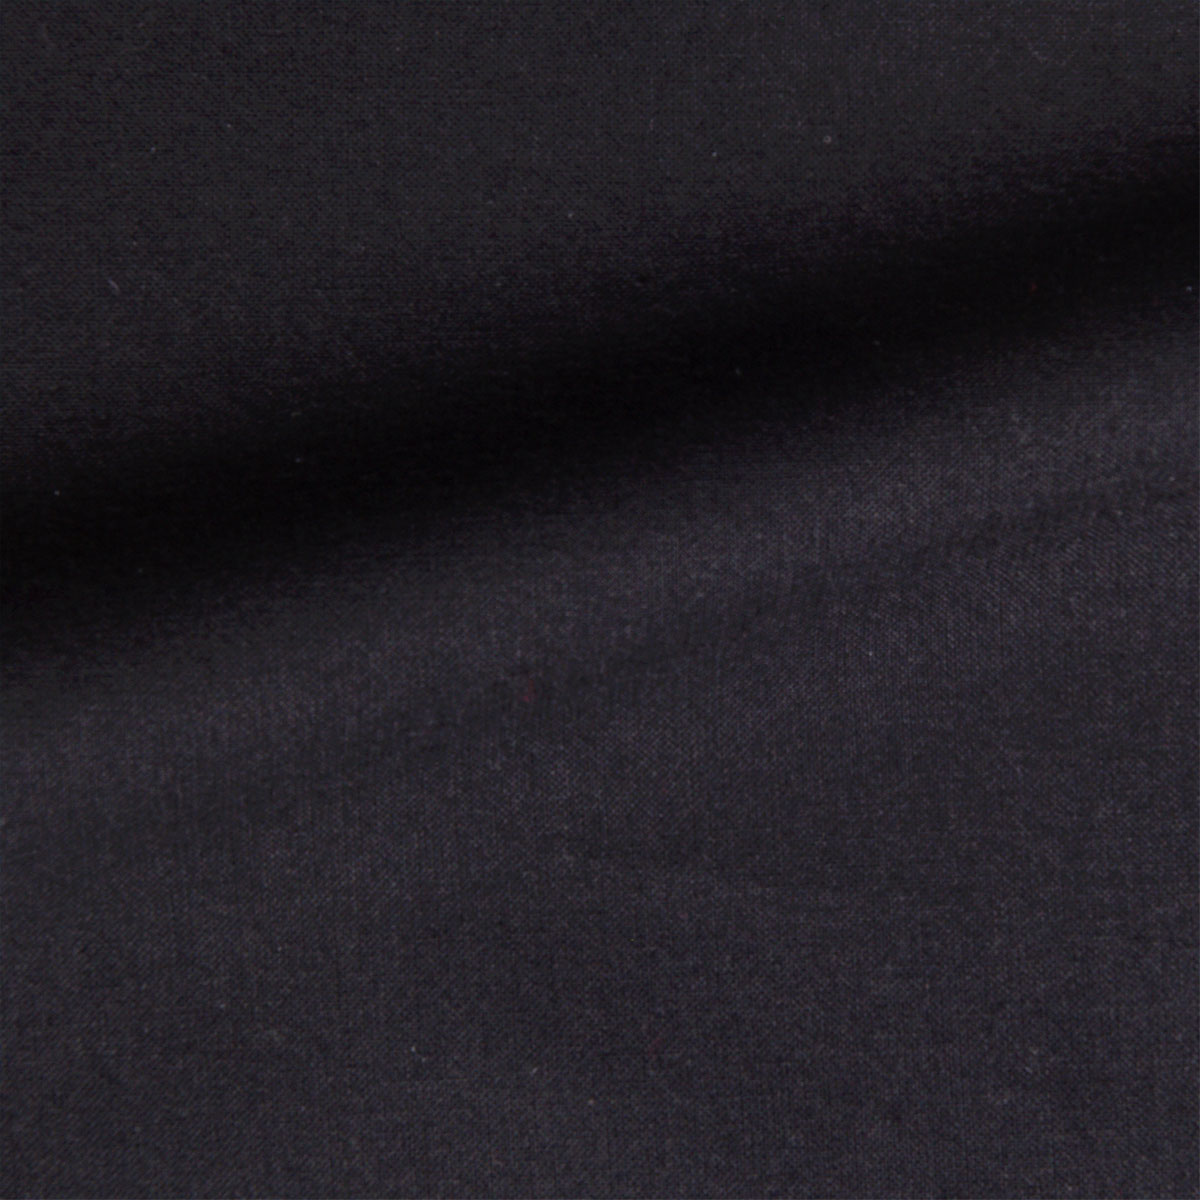 Dekostoff Freiberg schwarz in 1,4m Breite (METERWARE) Baumwollstoff Stoff aus 100% Baumwolle